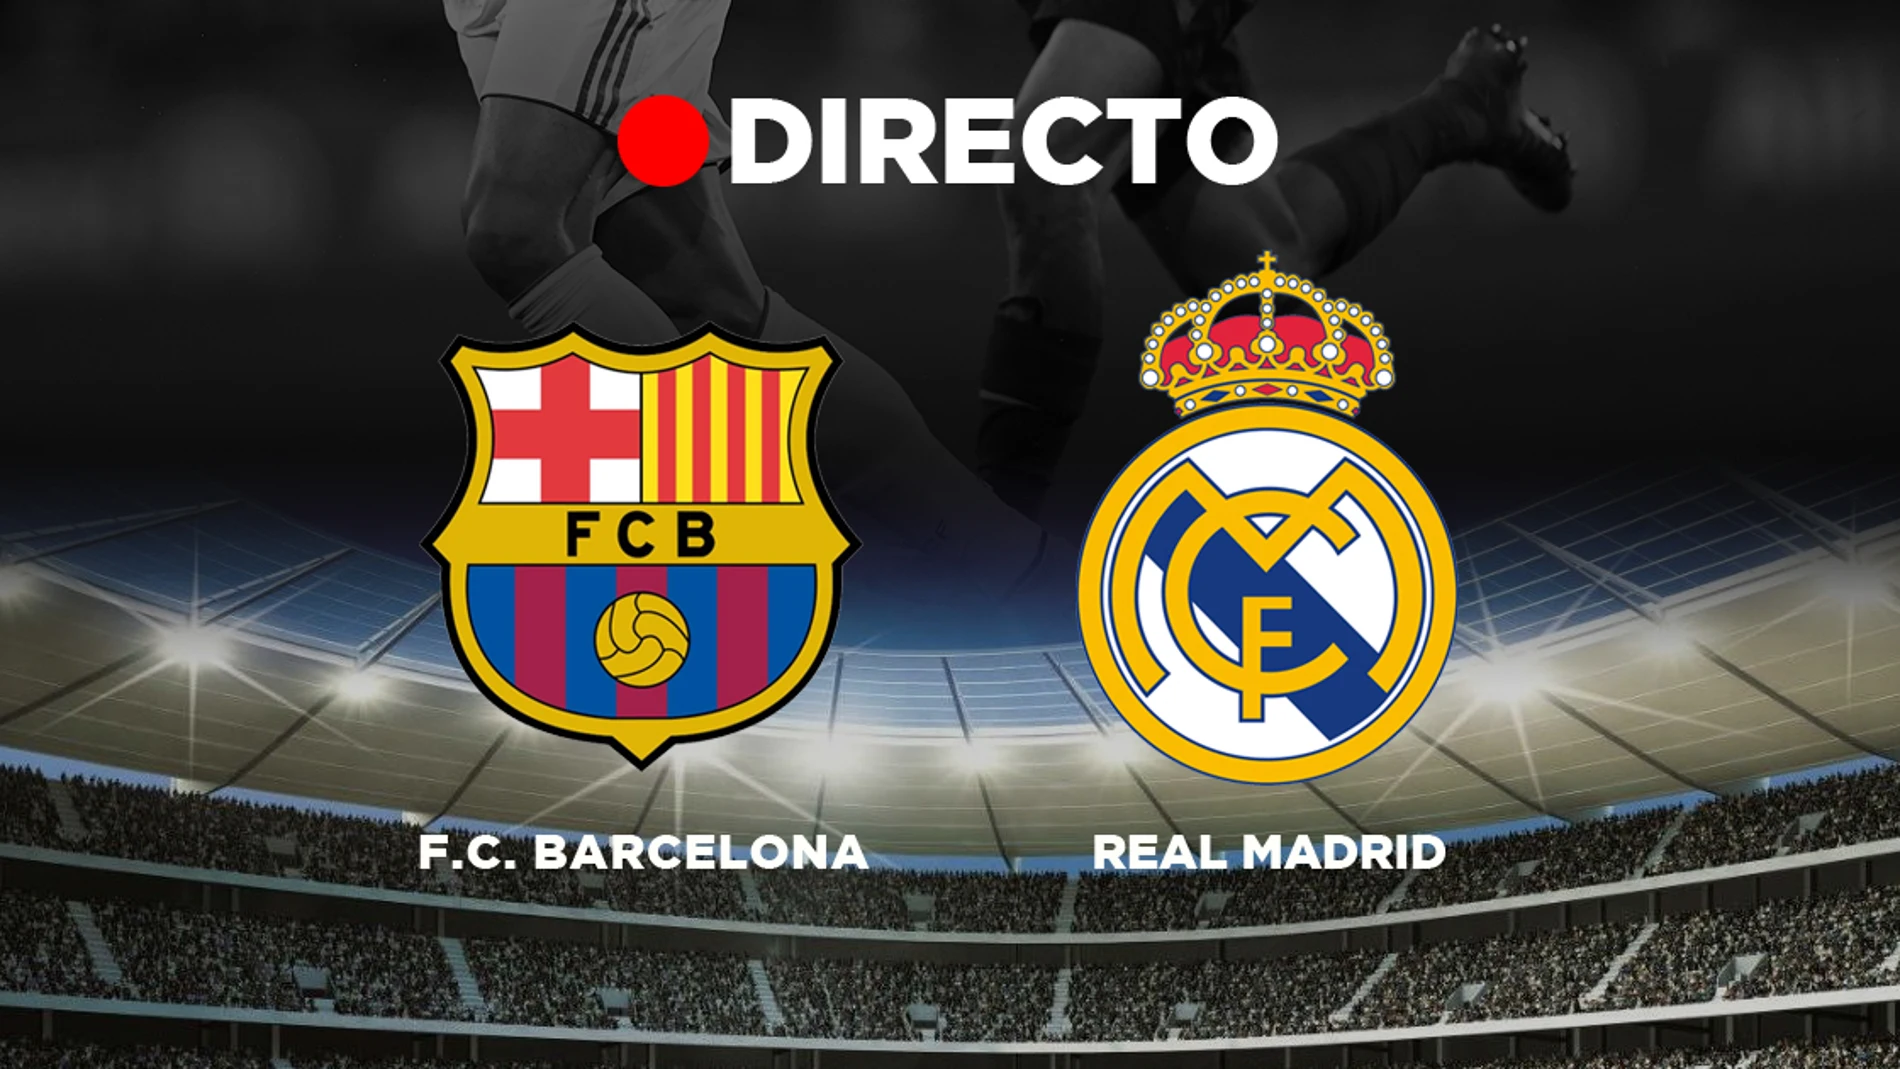 FC Barcelona - Real Partido de fútbol Liga, resumen y resultado Clásico en directo